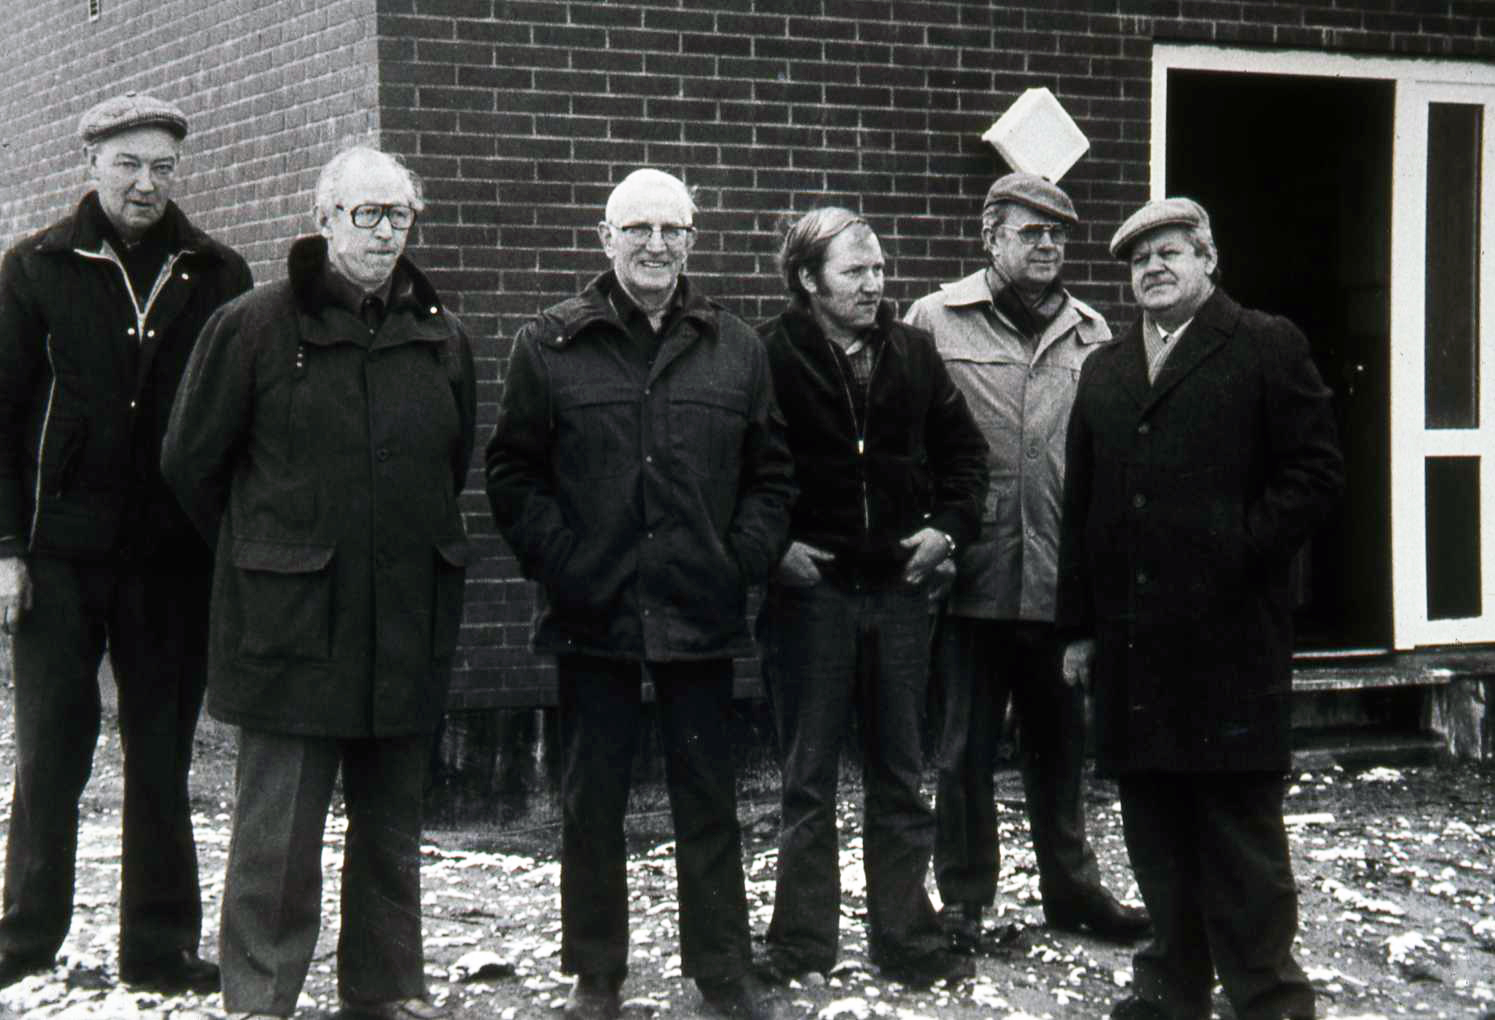 6 "vandmænd" alias Vind Vandværks bestyrelse anno 1981. Fra venstre ses vognmand Tage Nielsen (1930-2006), fhv. mejeribestyrer Hans Rahbek (1920-1999), fhv. gårdmand Thue Gammelvind (1910-2000), dernæst nyvalgt bestyrelsesmedlem, smedemester Ejgil Bertelsen og afgående bestyrelsesmedlem, fhv. gårdmand Anker Larsen (1915-1983) samt købmand Knud Erik Halkjær (1930-1999).